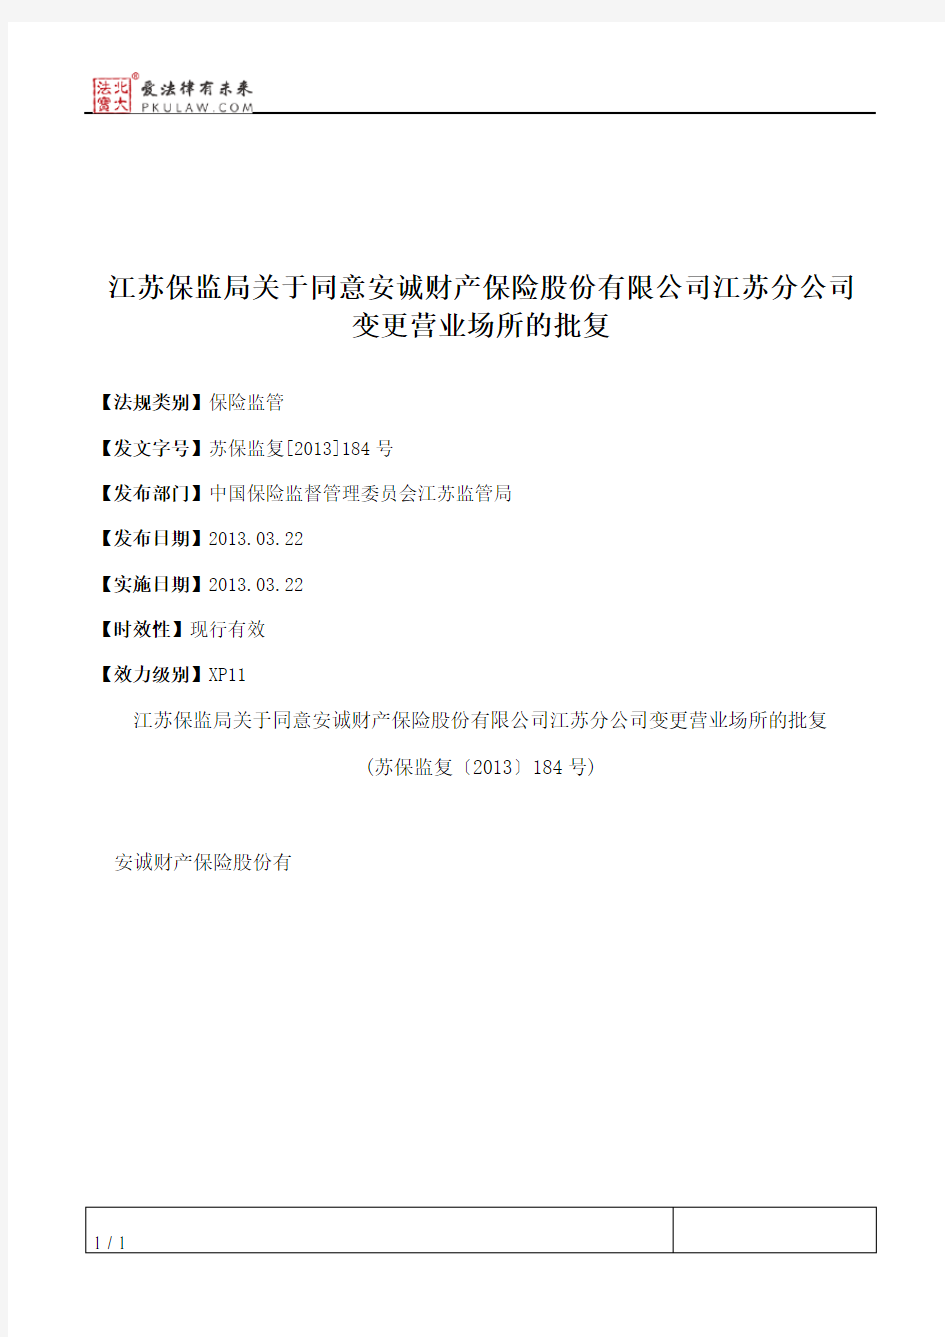 江苏保监局关于同意安诚财产保险股份有限公司江苏分公司变更营业